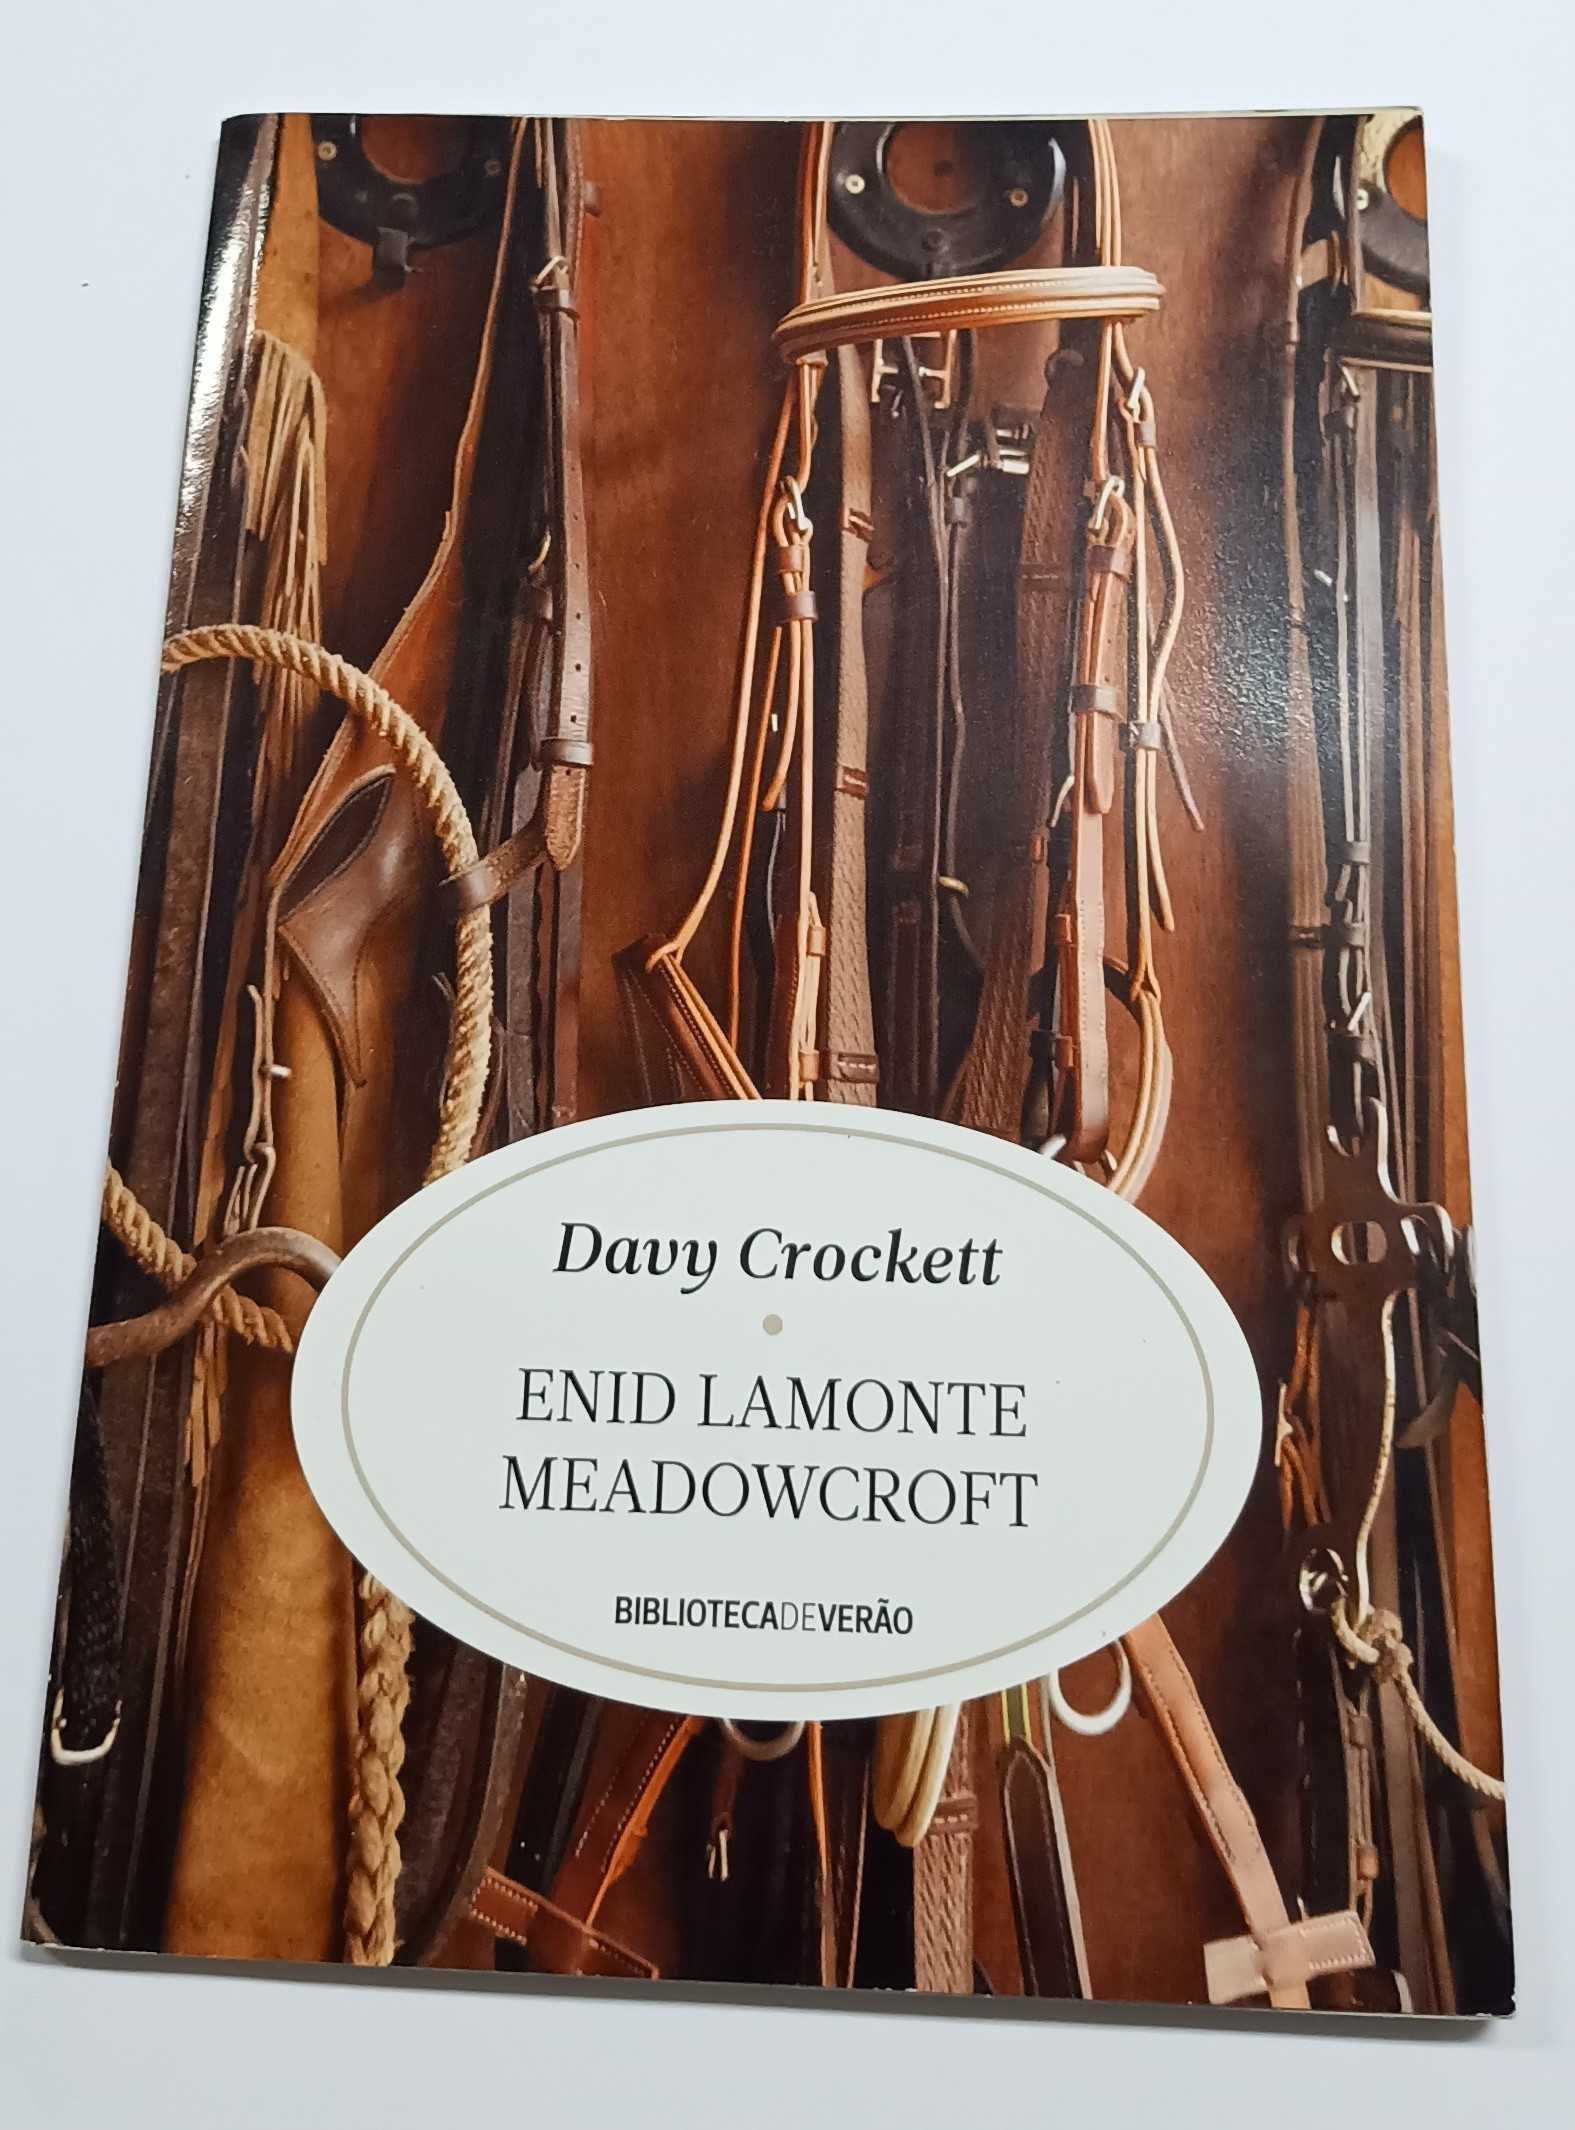 Davy Crockett, de Enid Lamonte Meadowceroft